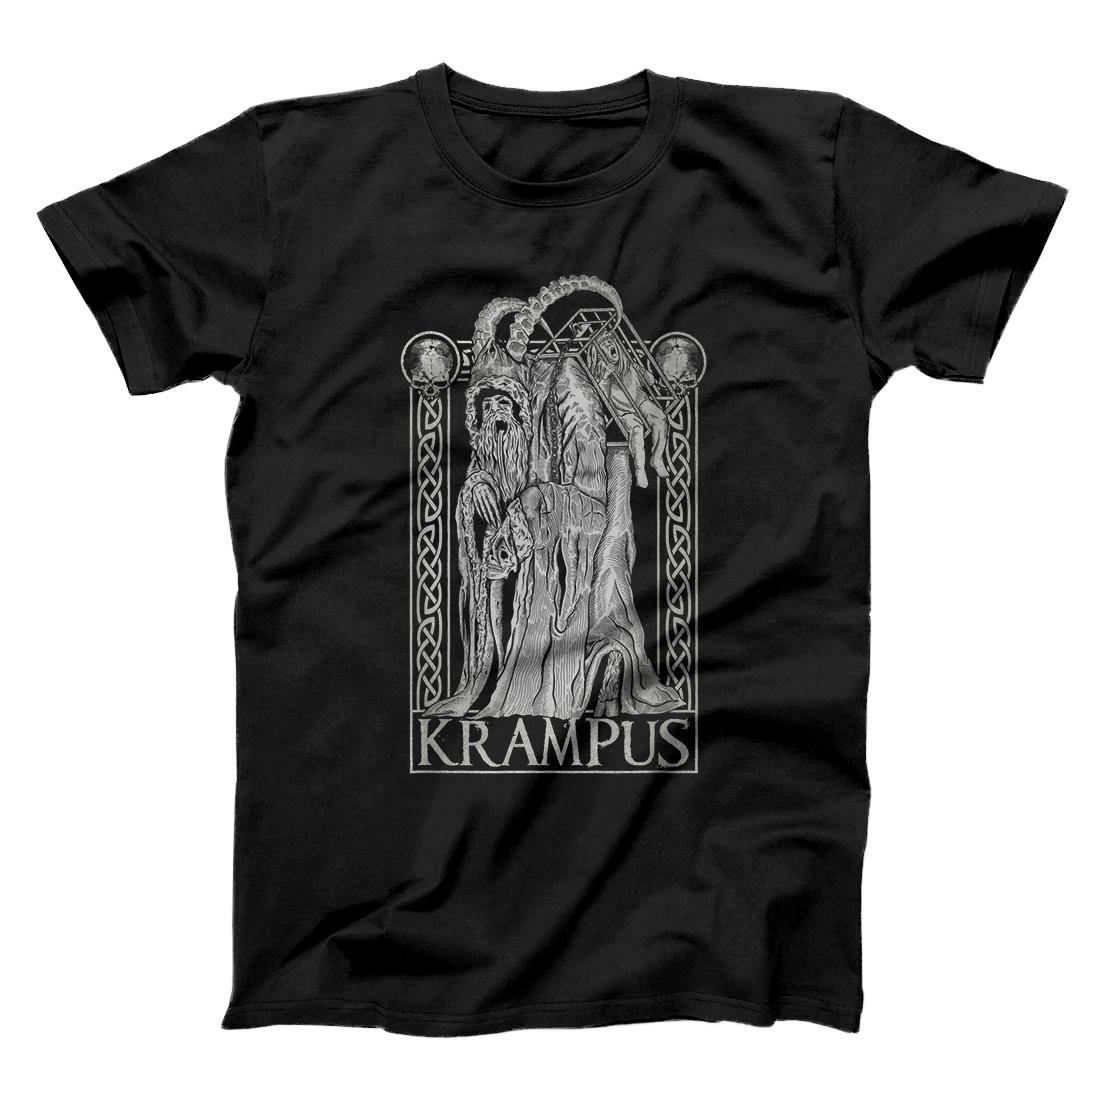 Personalized Krampus - Gruss von Krampus Dark Gothic Christmas T-Shirt